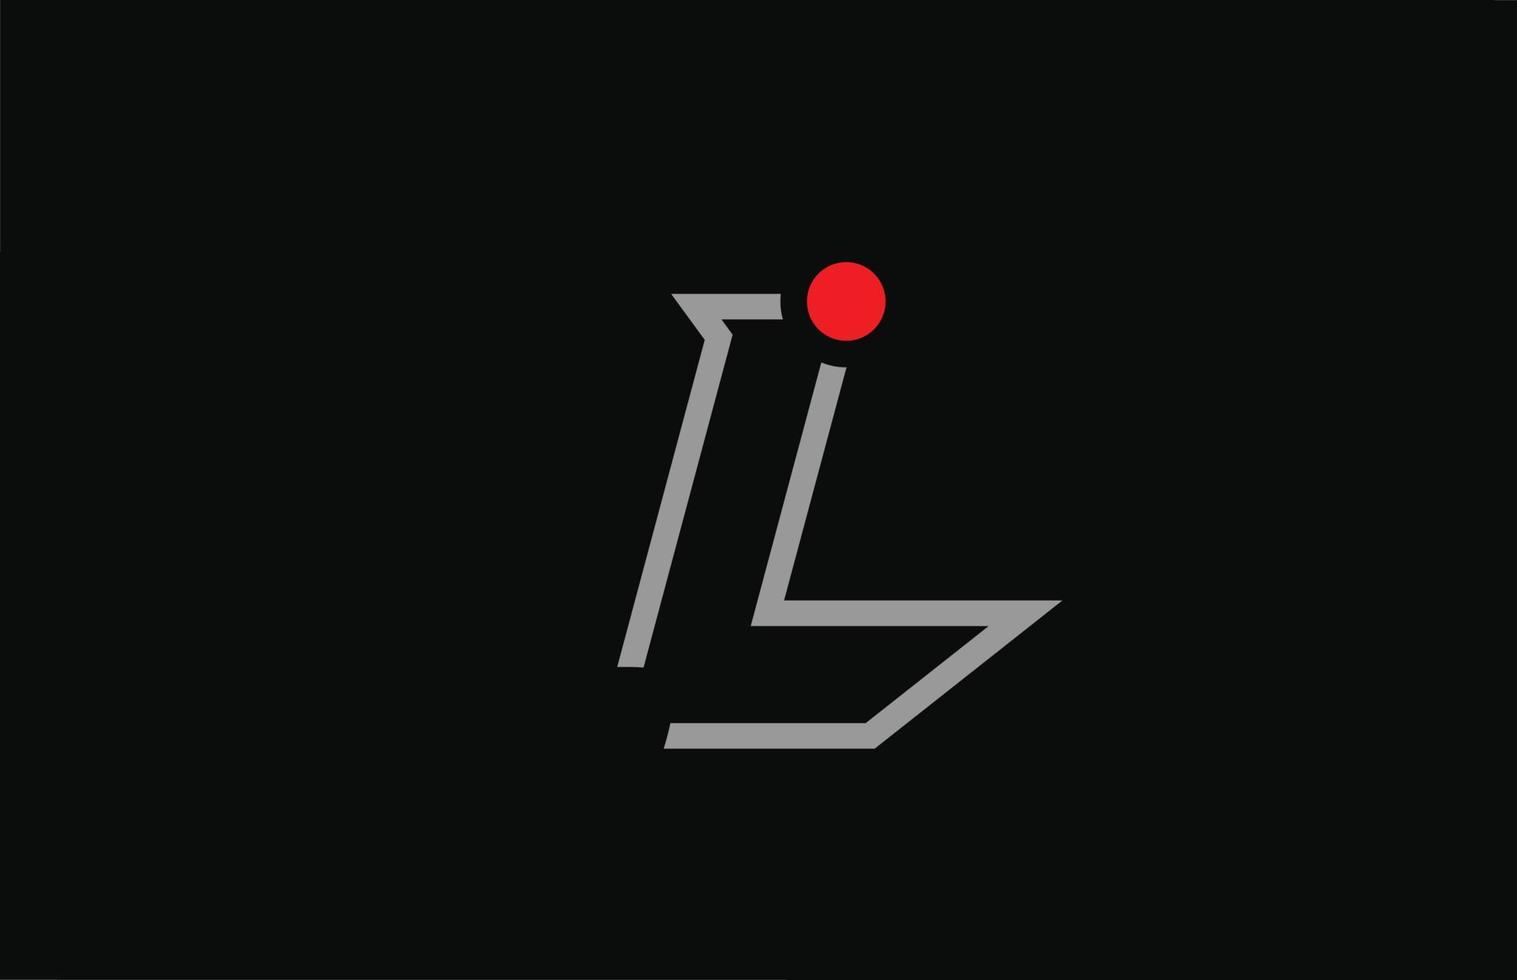 L diseño de icono de logotipo de letra del alfabeto en blanco y negro con punto rojo. plantilla creativa para empresa y negocio vector